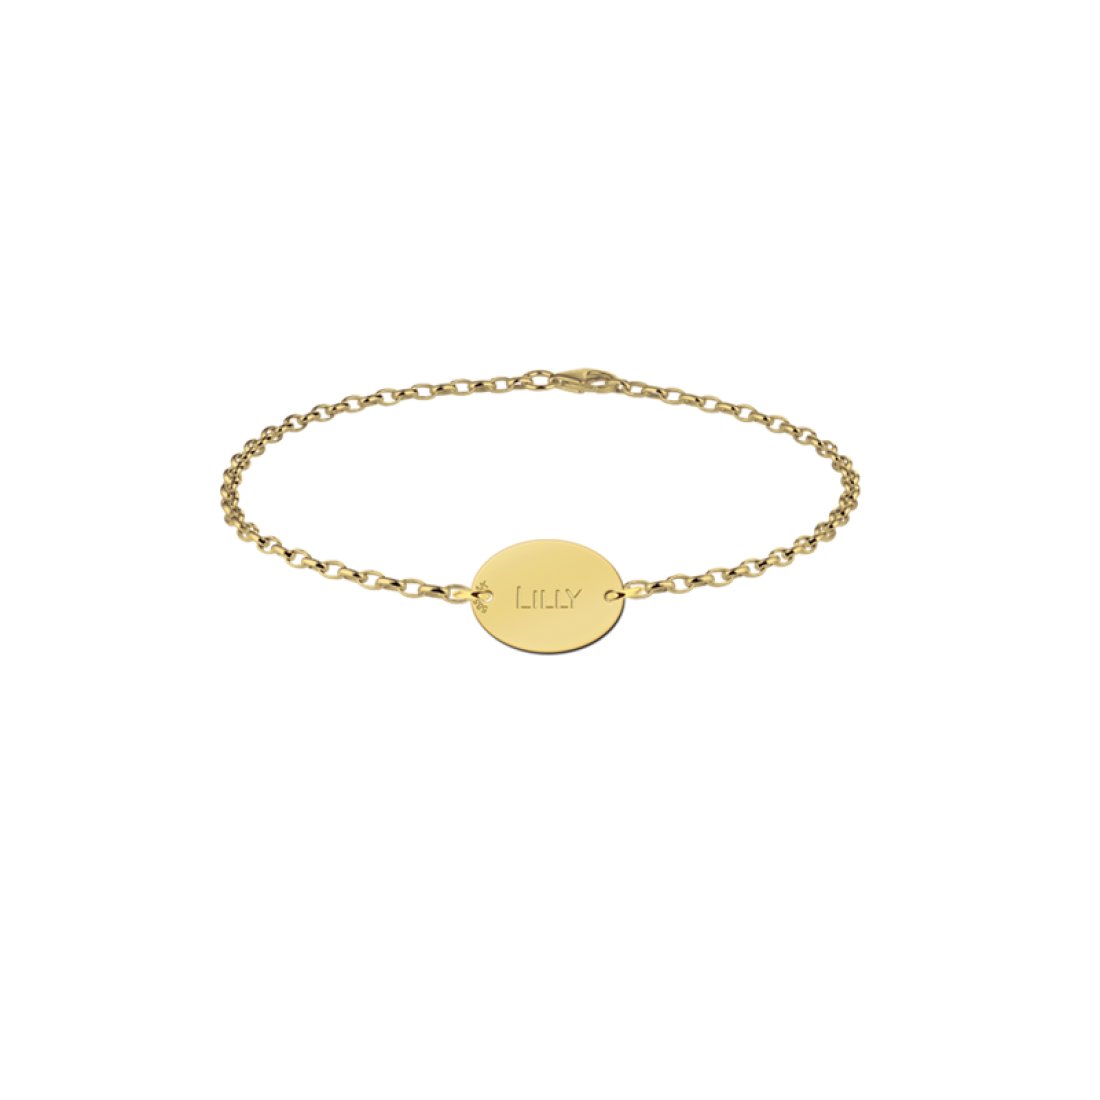 wees onder de indruk Woedend Populair Gouden armbandje met naam ovaal / Anny van Buul Juweliers Sieraden